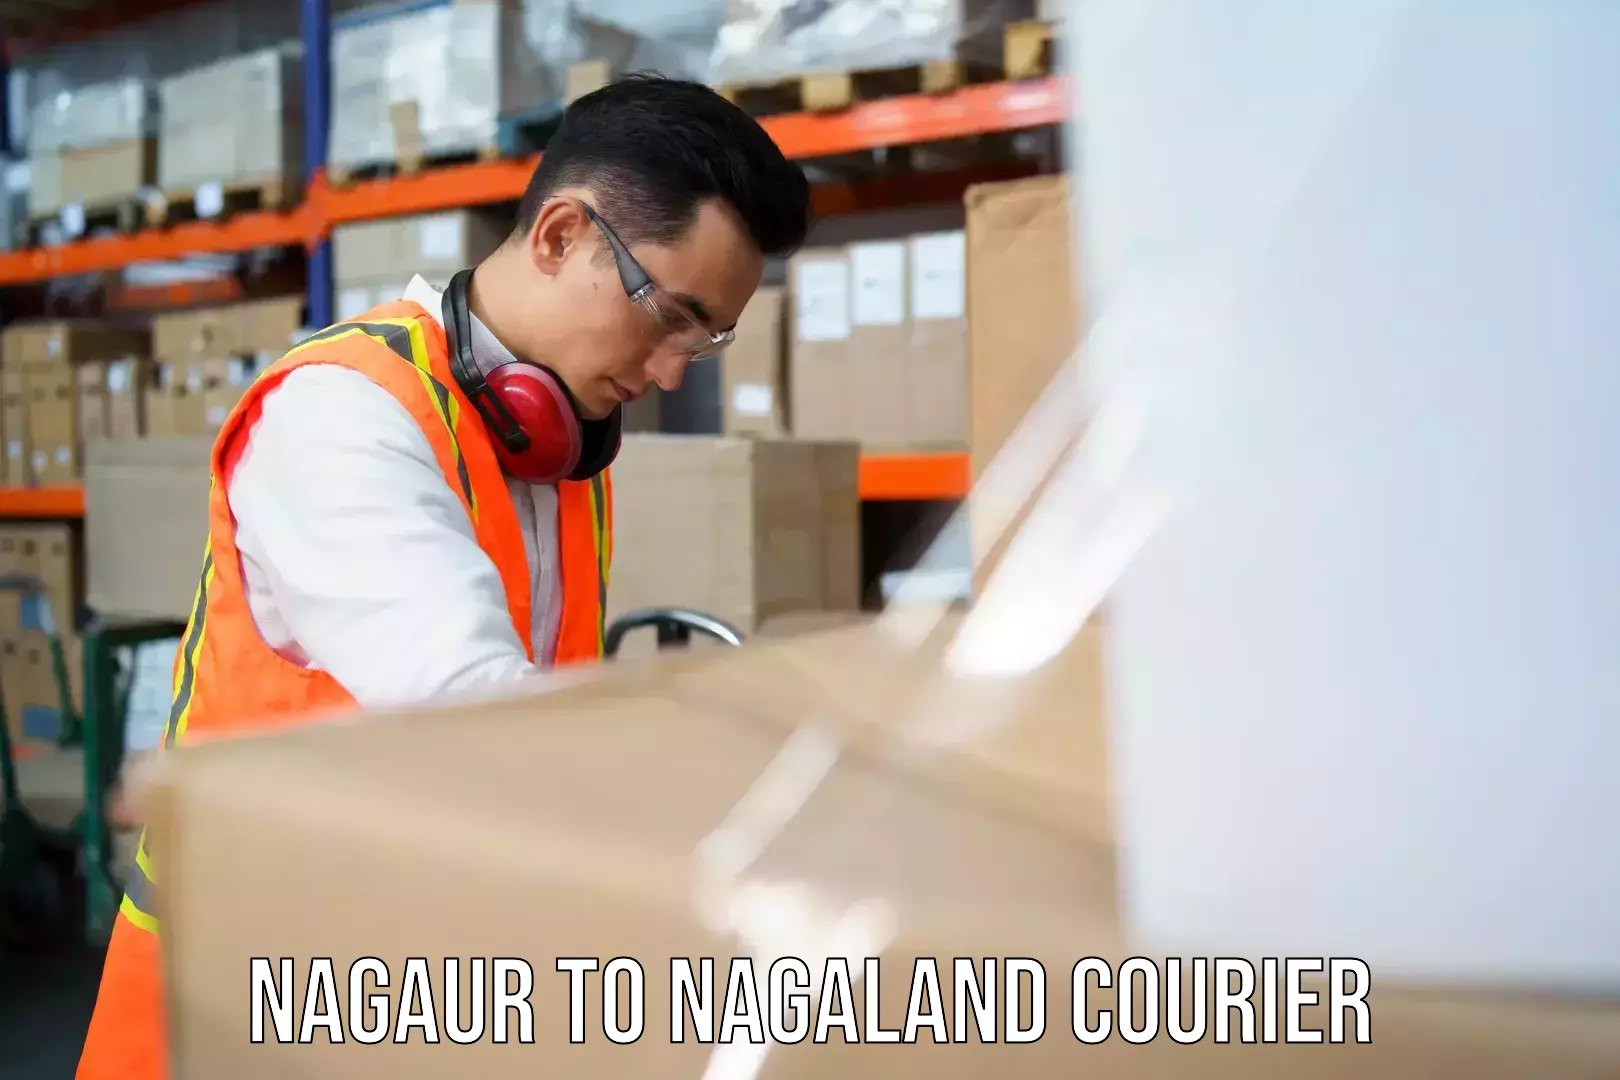 Nationwide shipping capabilities Nagaur to Nagaland